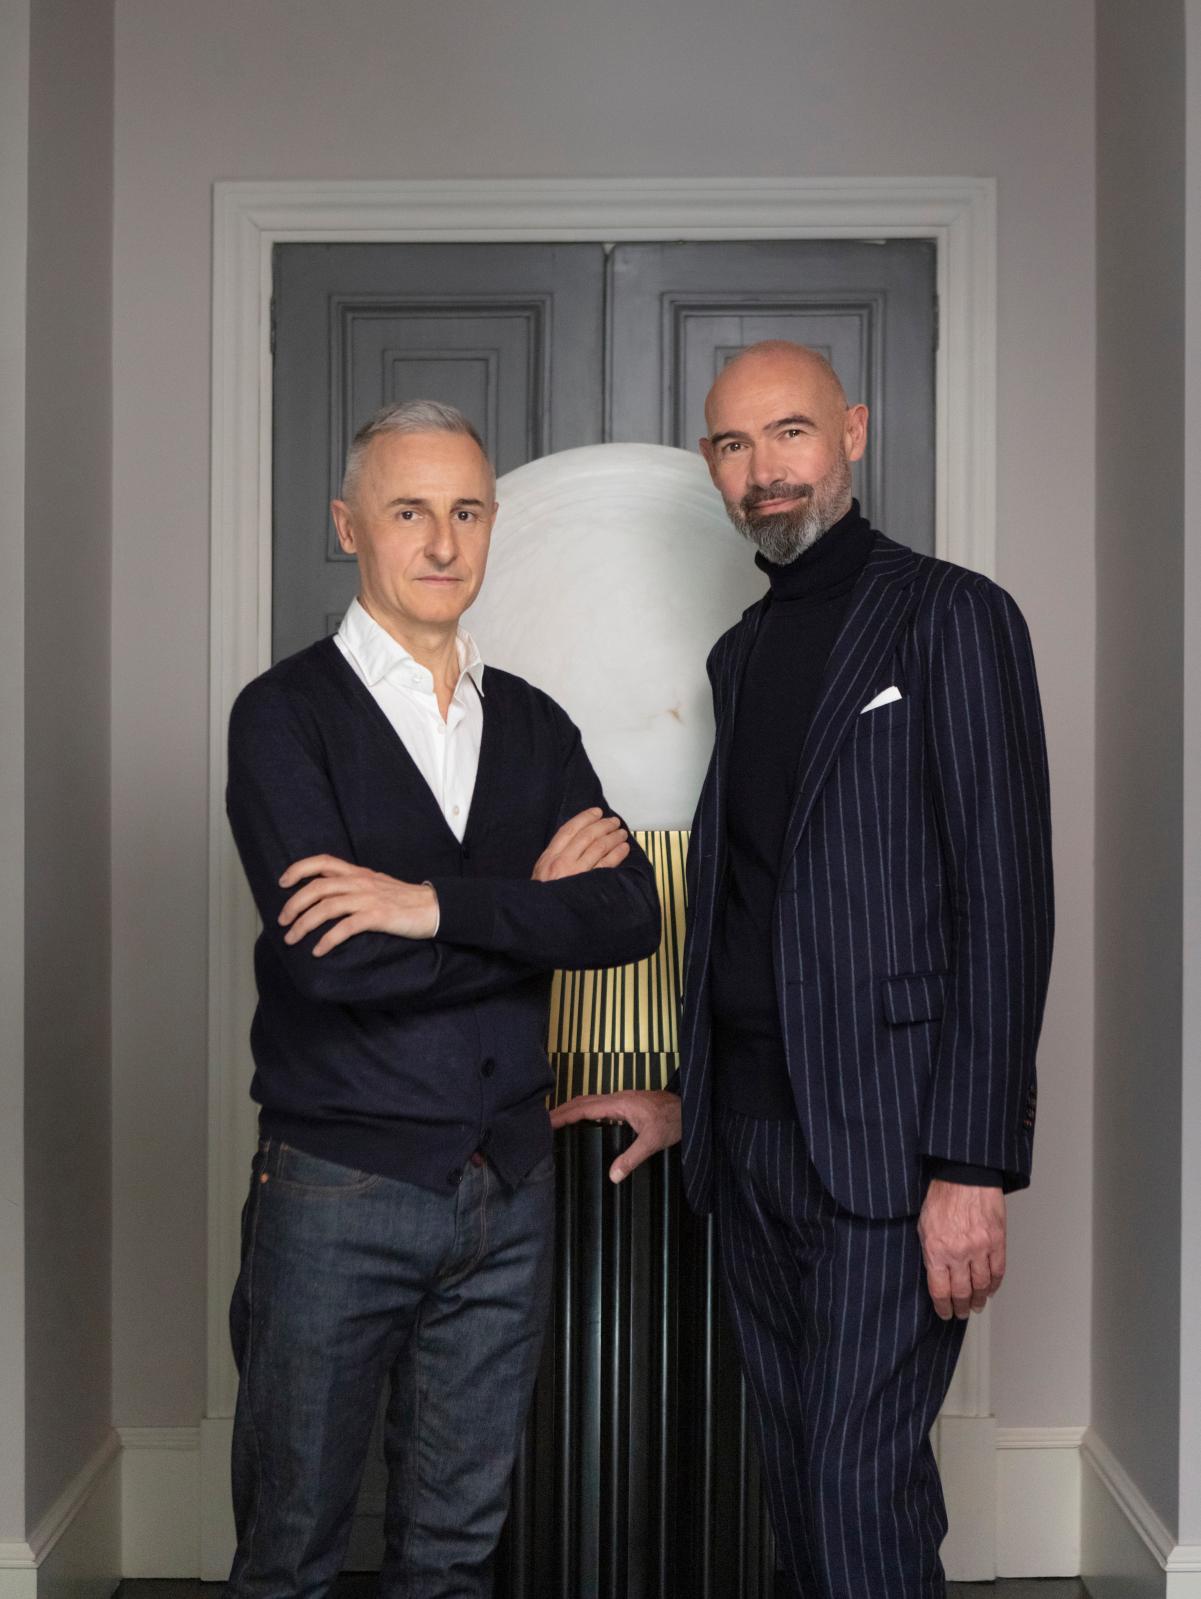 Hervé Van der Straeten and Alexandre Biaggi: A Pair of Aesthetes